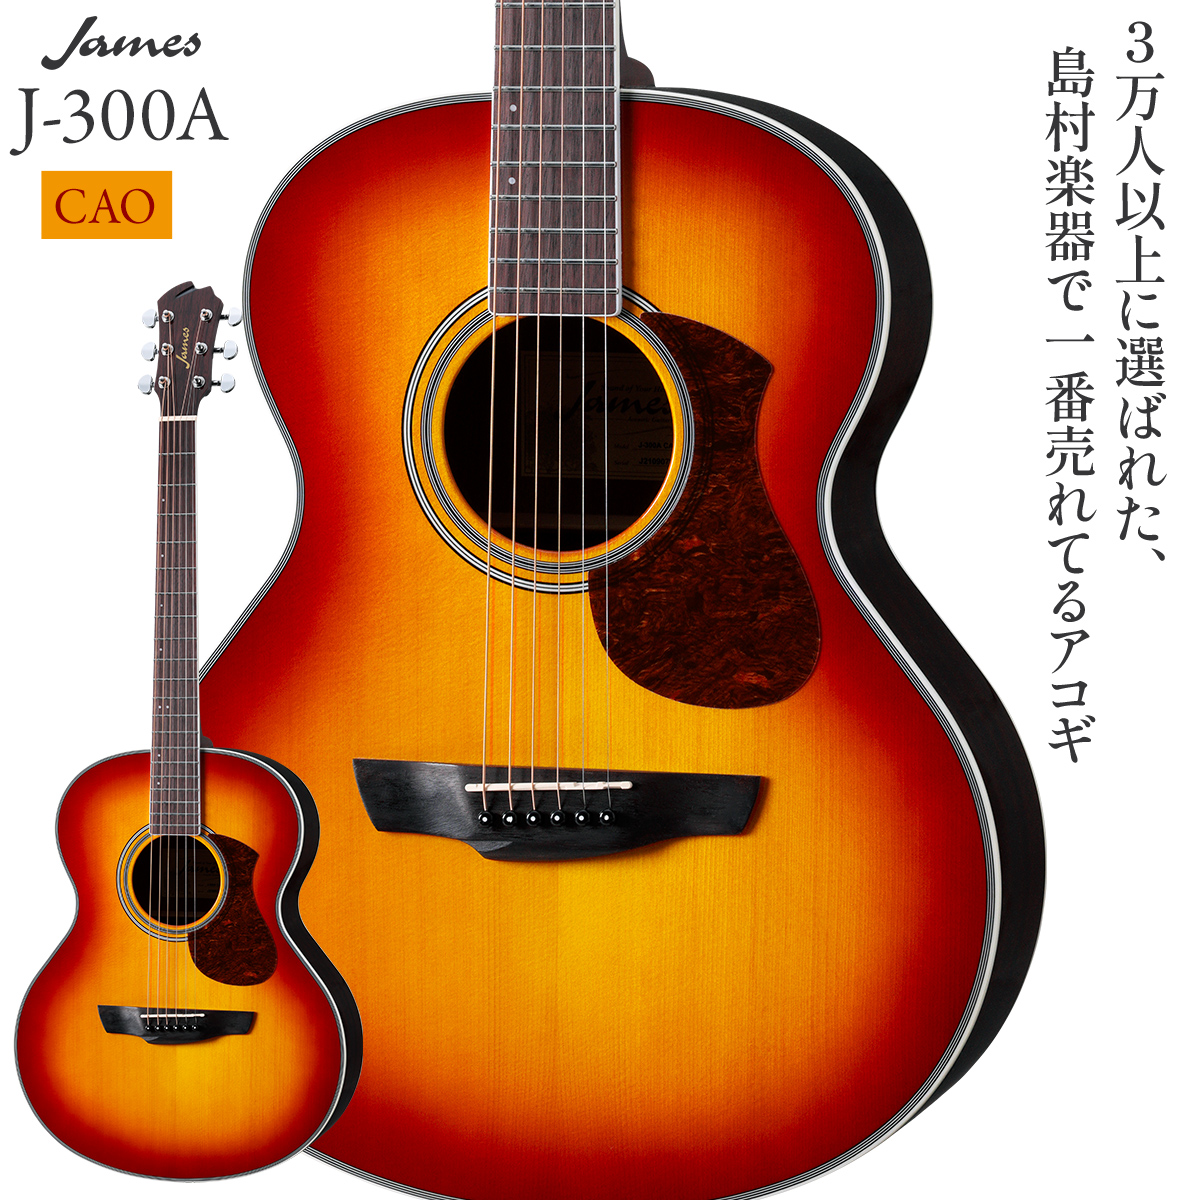 アコースティックギター J-300A CAO ソフトケースカポピックチューナー 